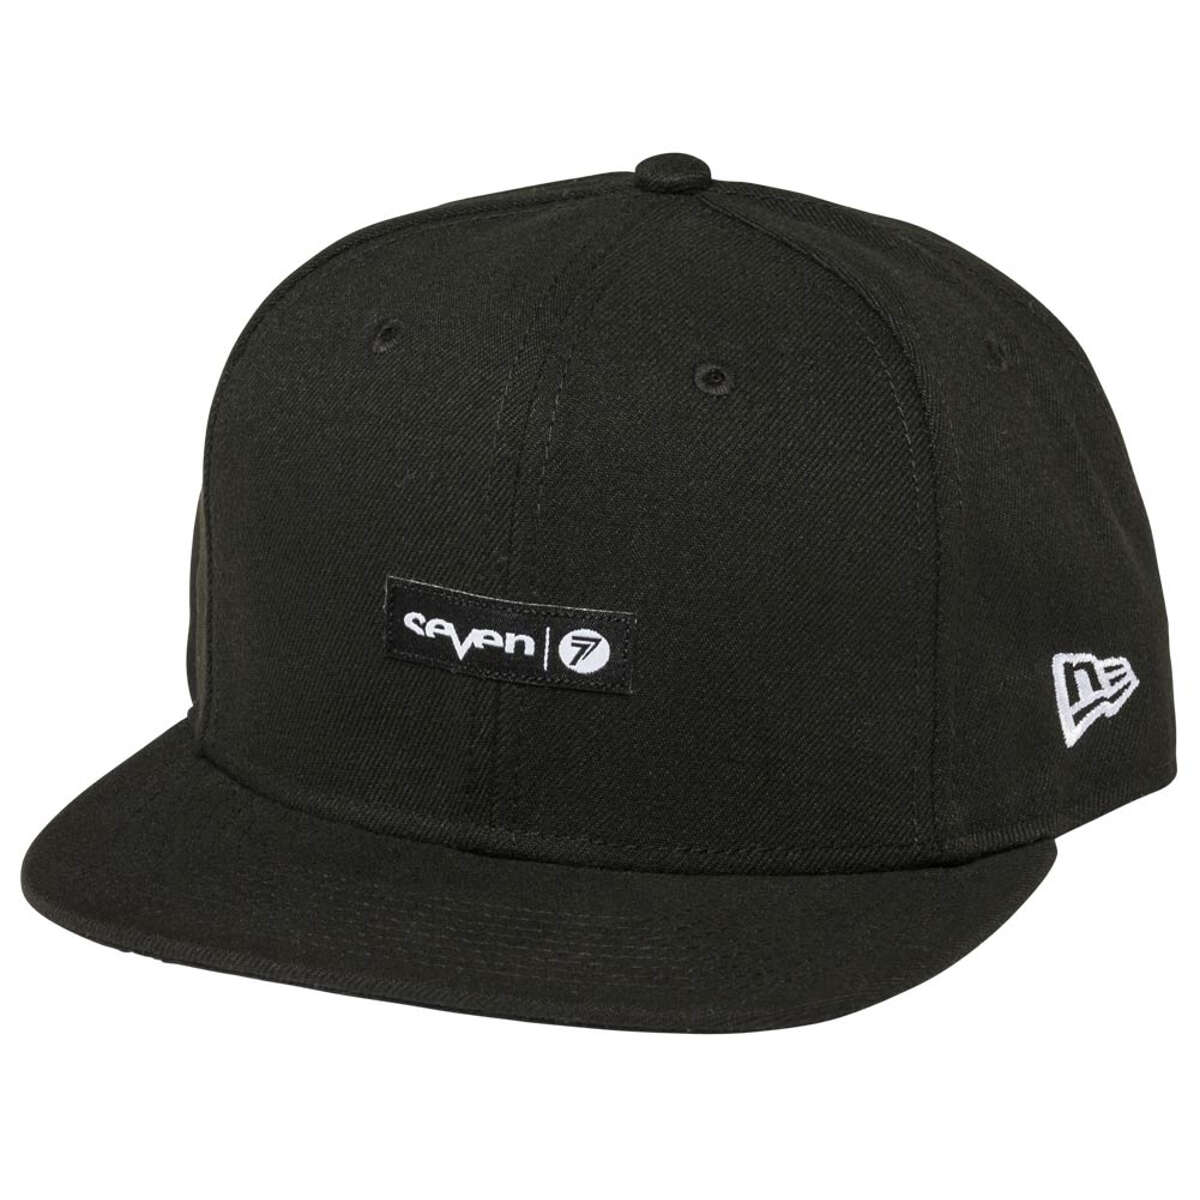 Seven MX Snapback Cap Authentic Black